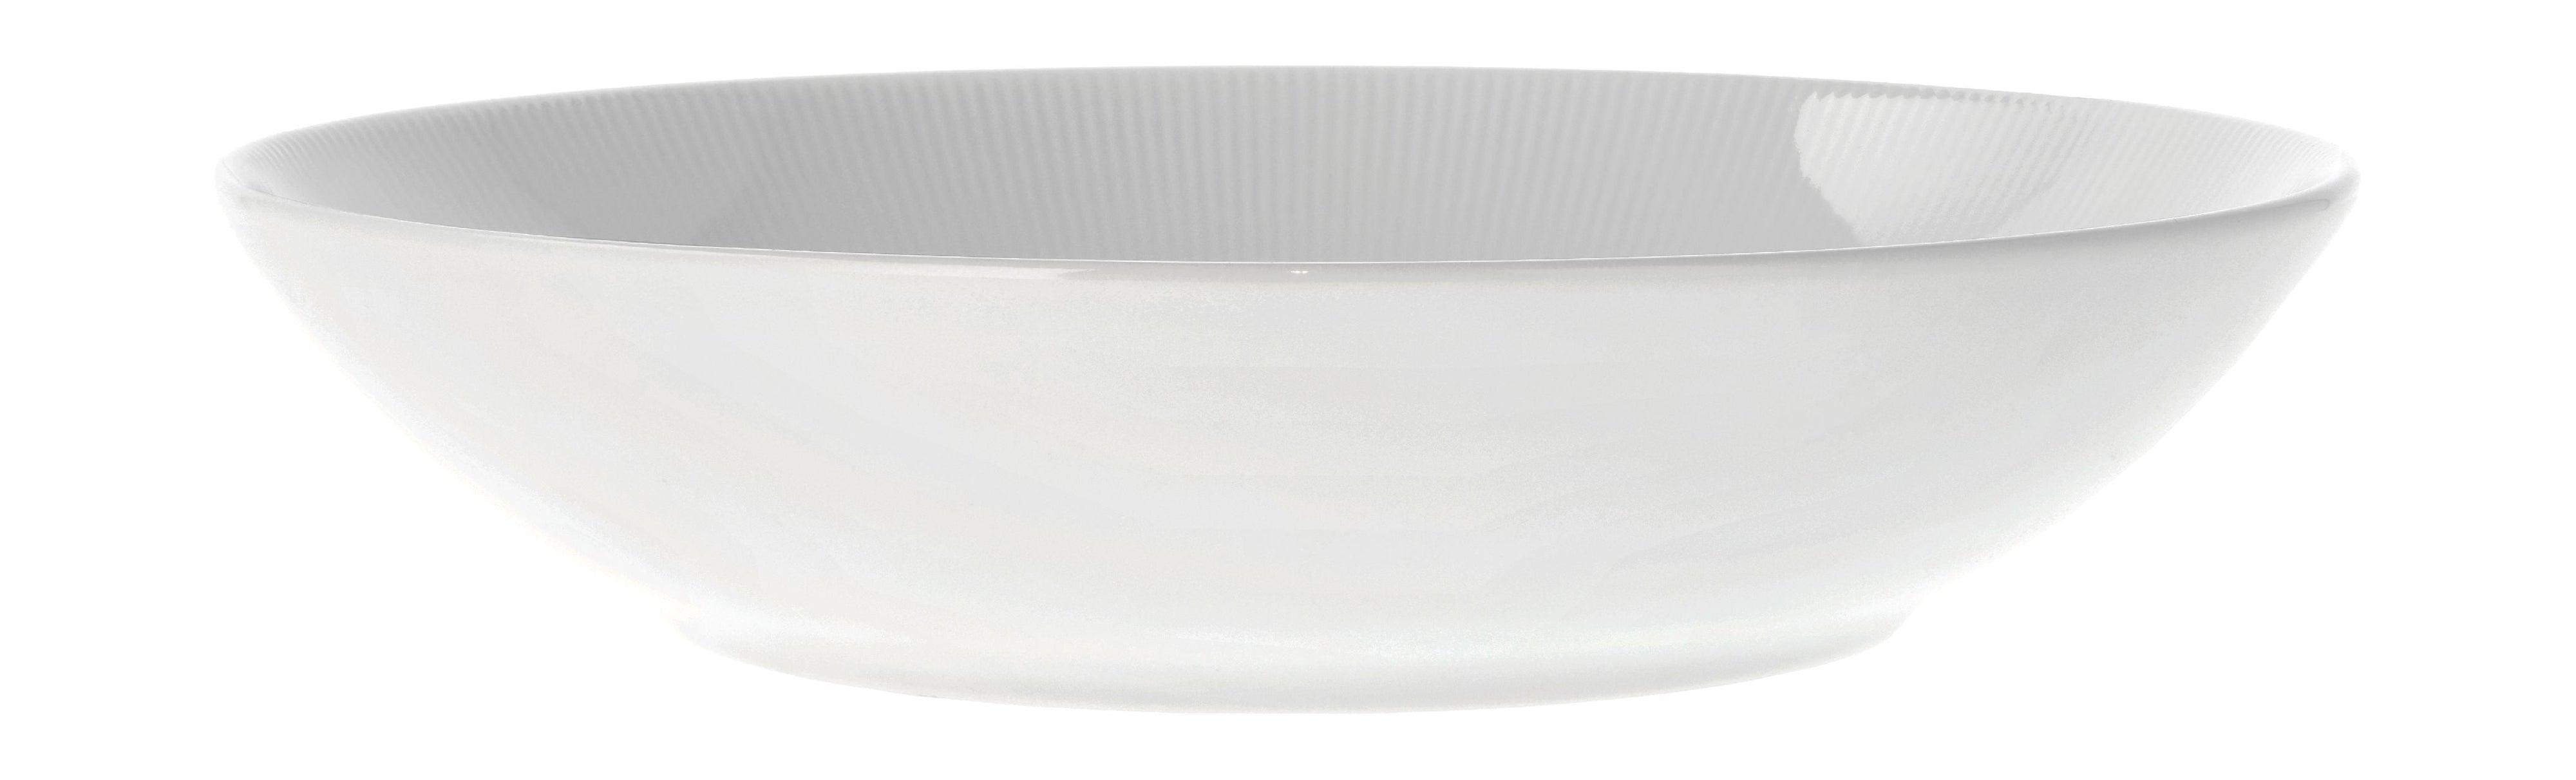 Pillivuyt Eventail Bowl Ø23 cm 0,8 litrów, biały